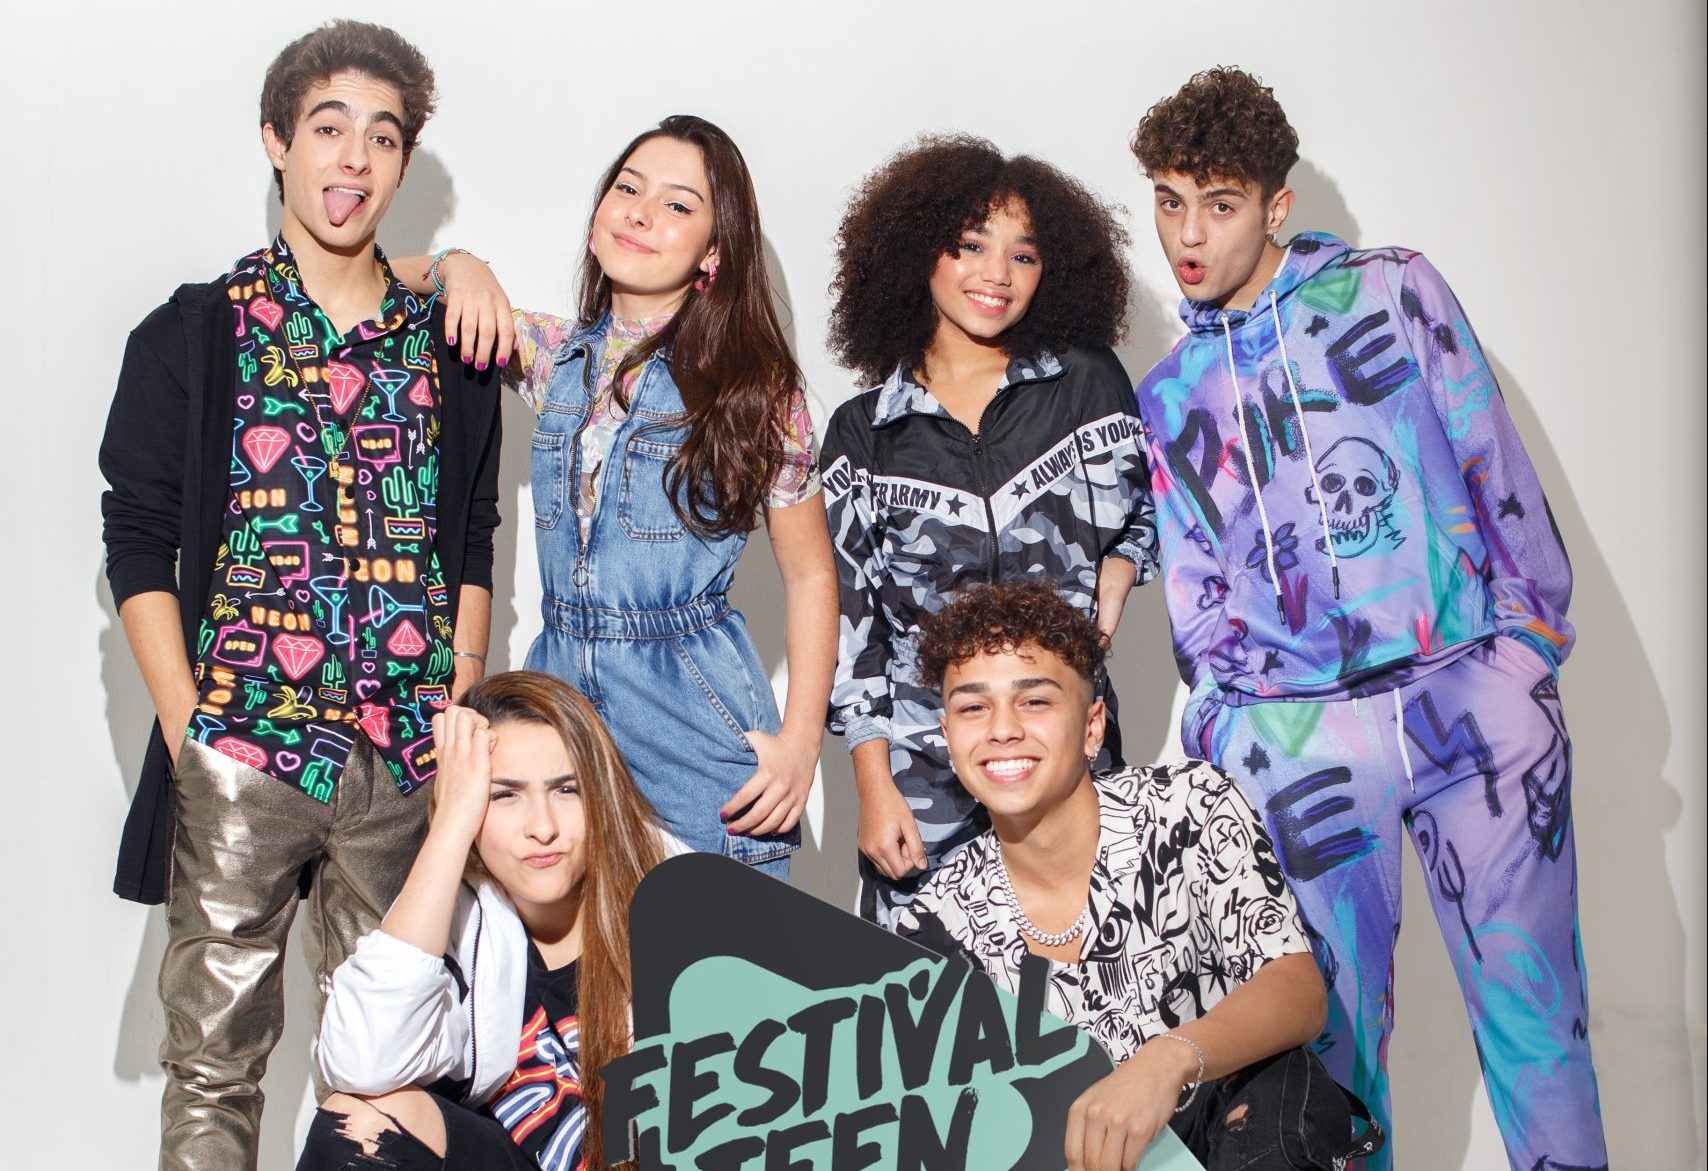 Festival Teen 2020 Live Show tem 11 bandas e artistas, 6 apresentadores e 8 horas de transmissão ao vivo